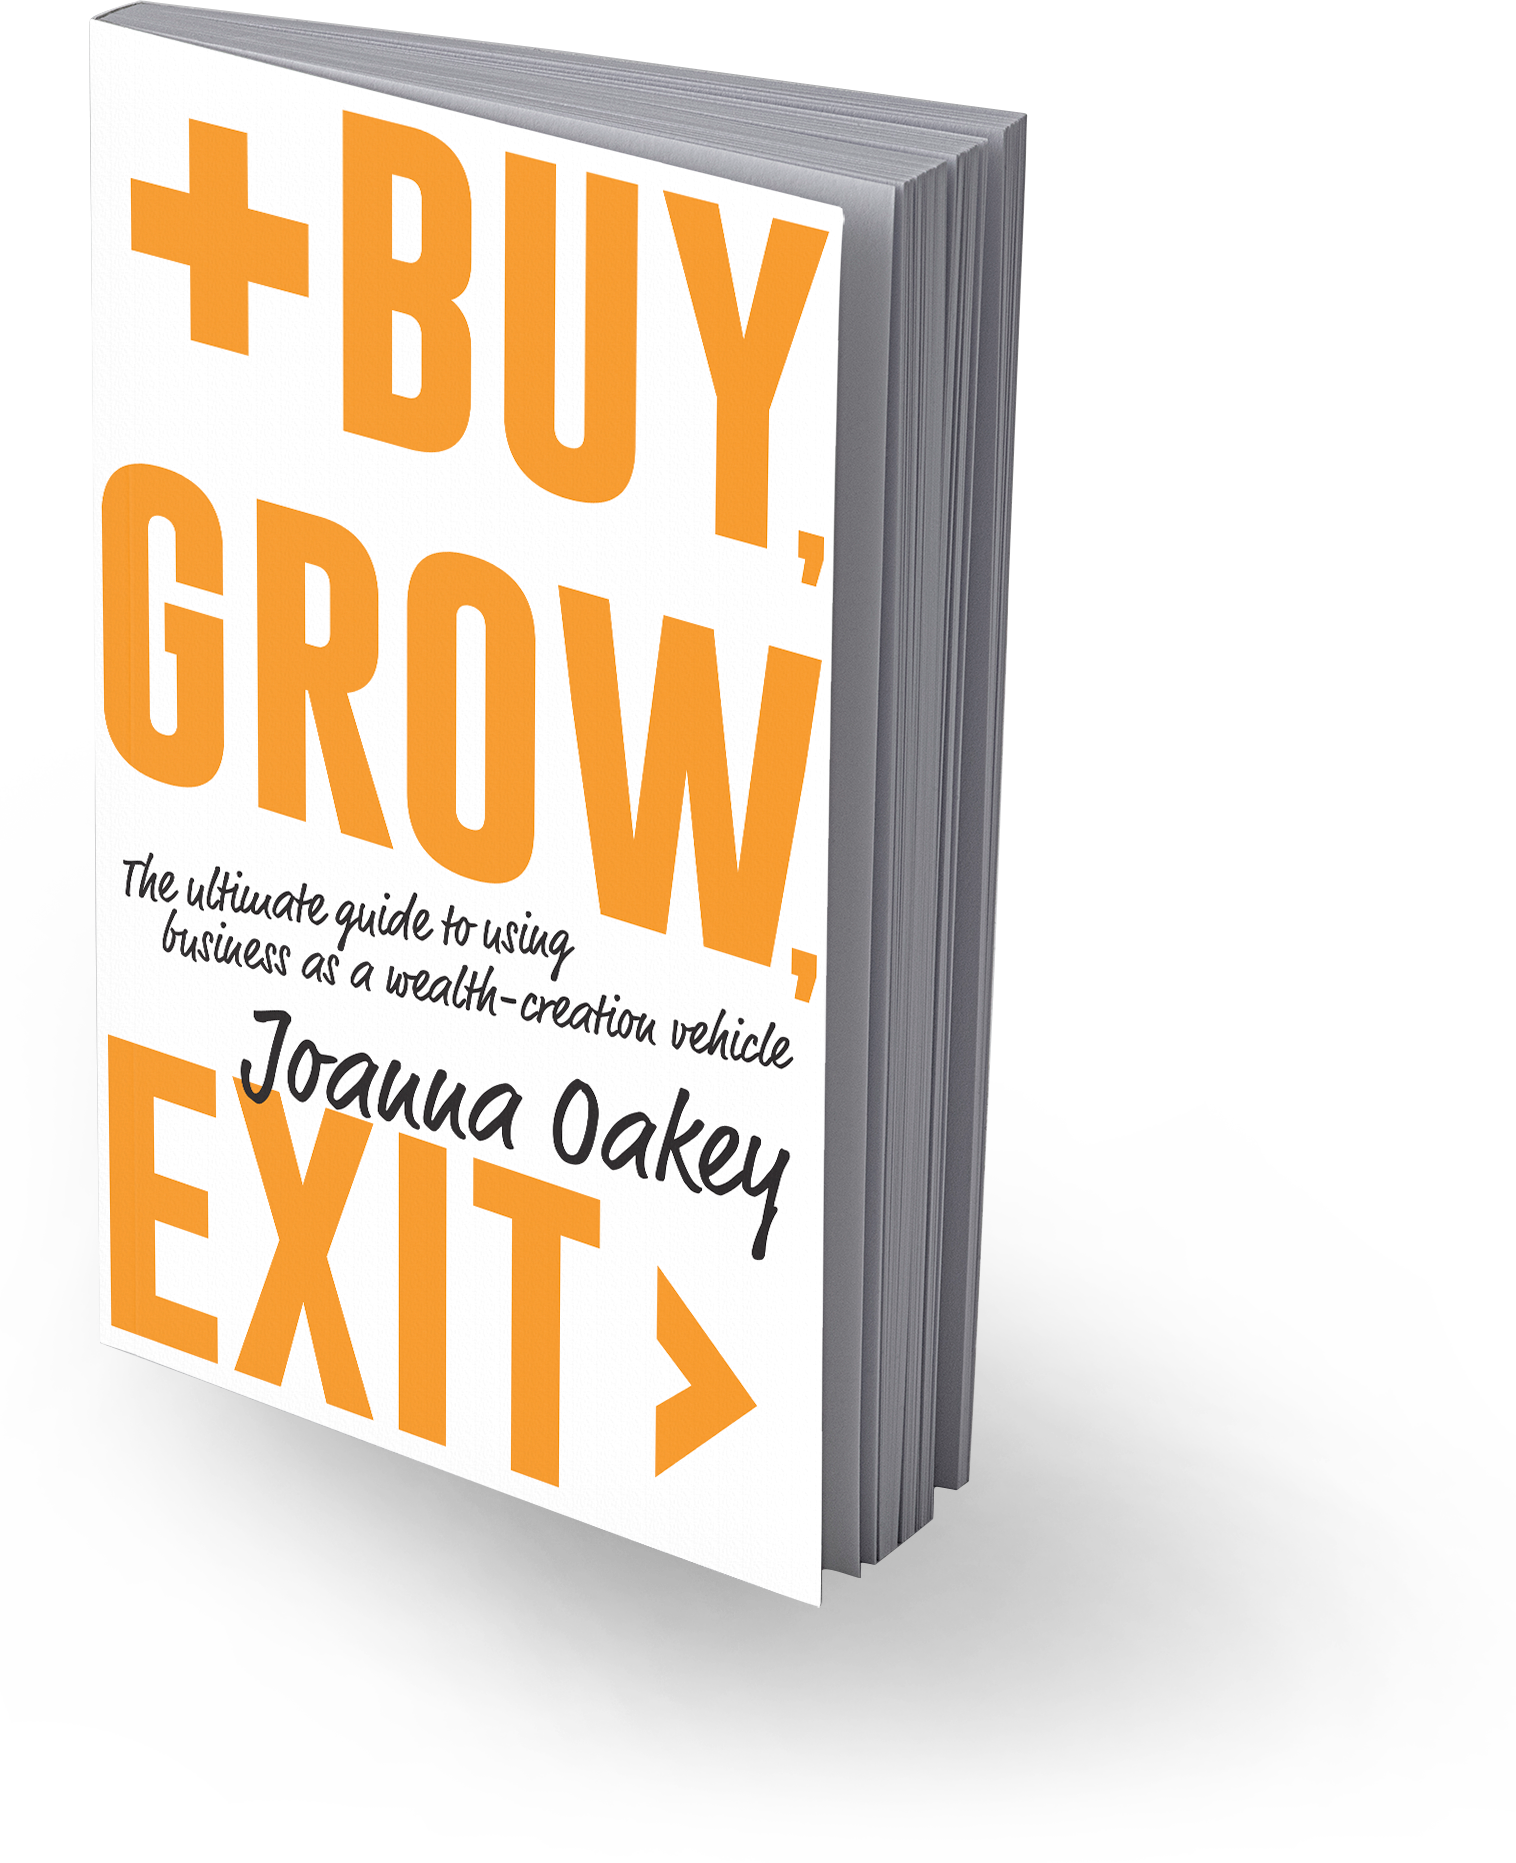 Buy Grow Exit - Joanna Oakey